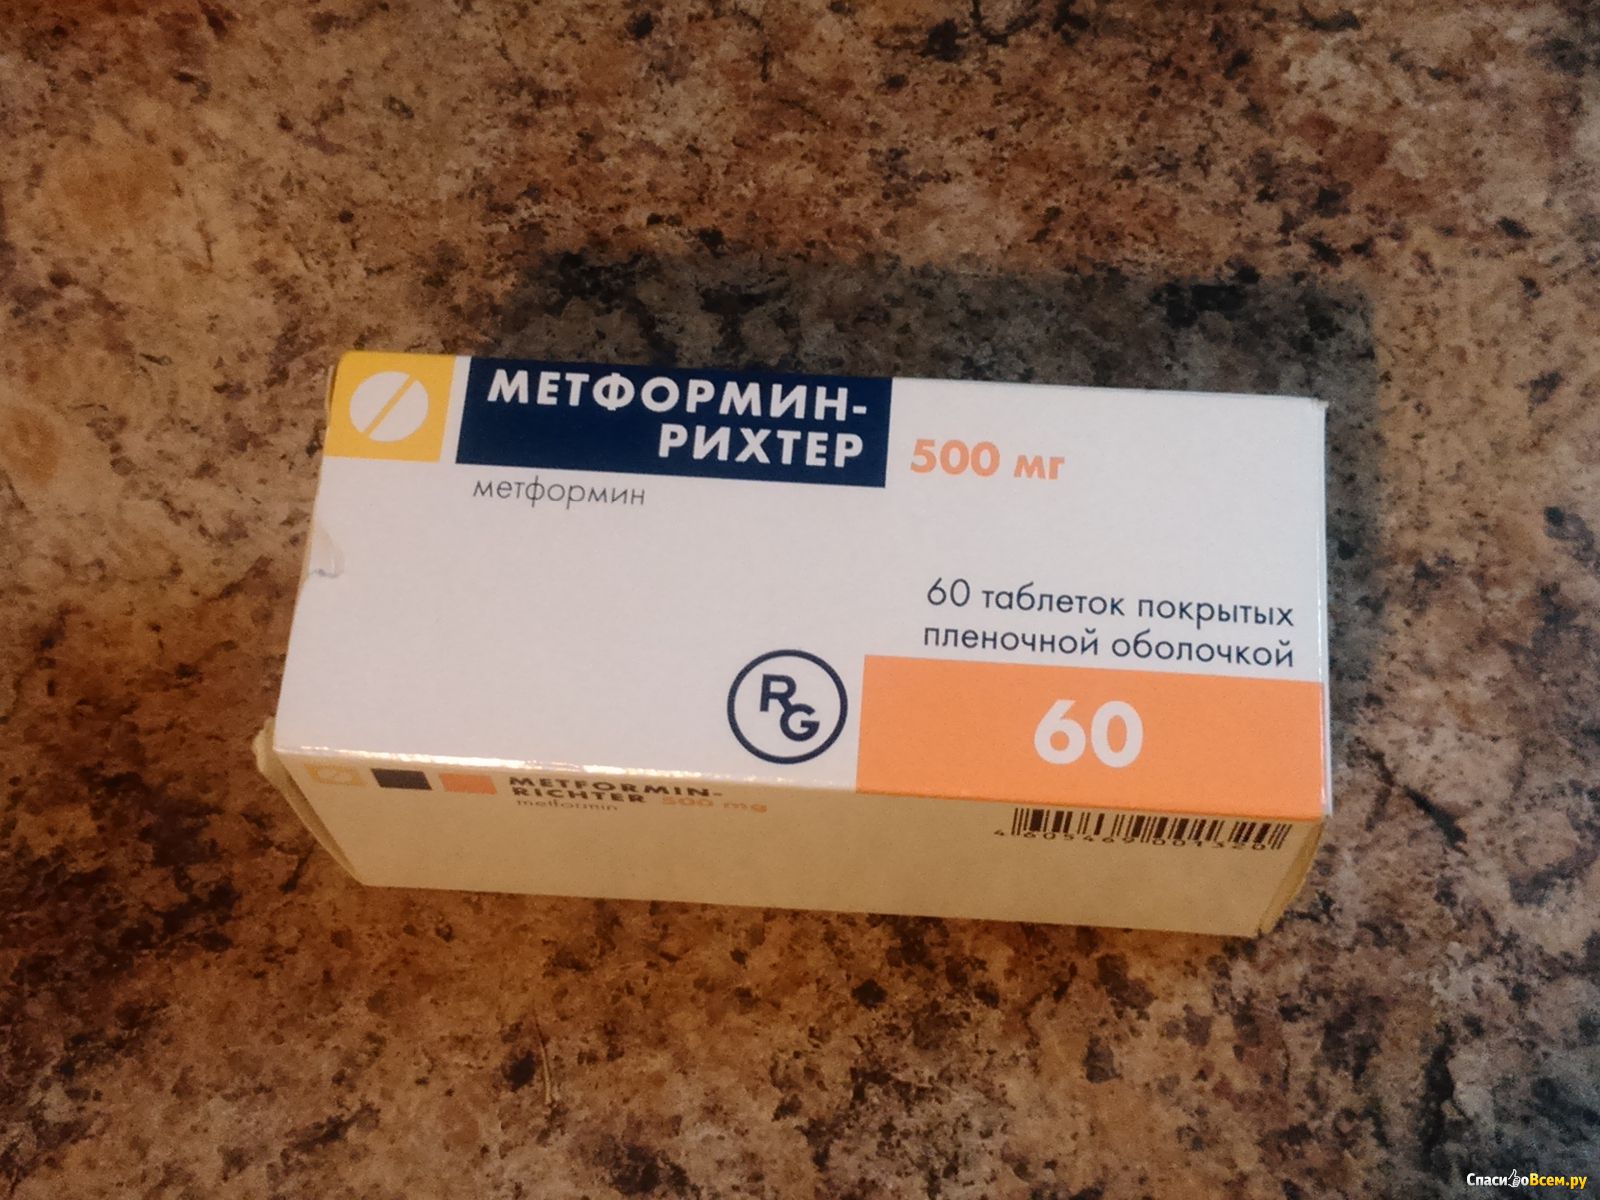 Метформин купить в аптеке